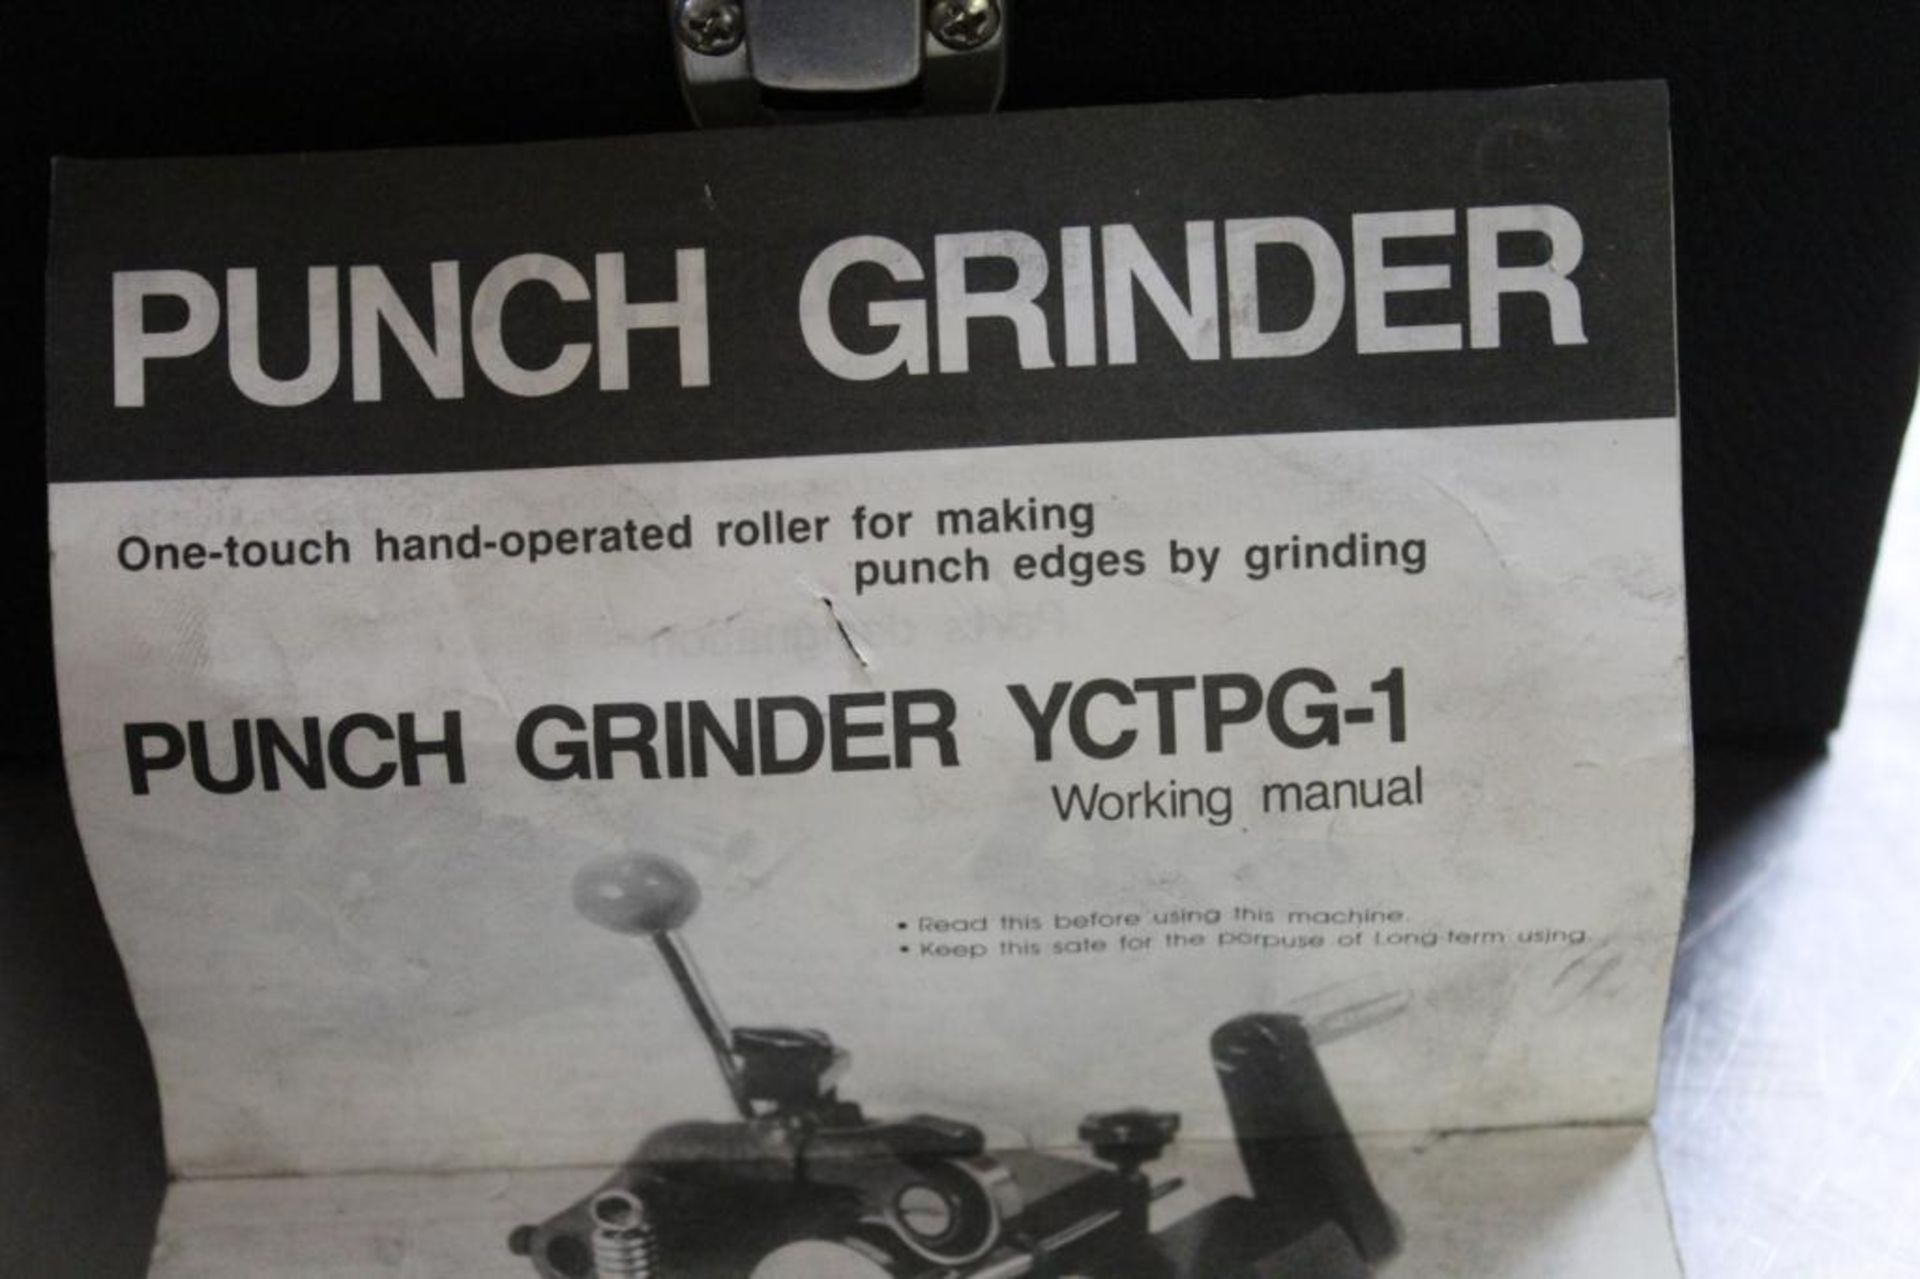 Punch grinder - Image 2 of 5